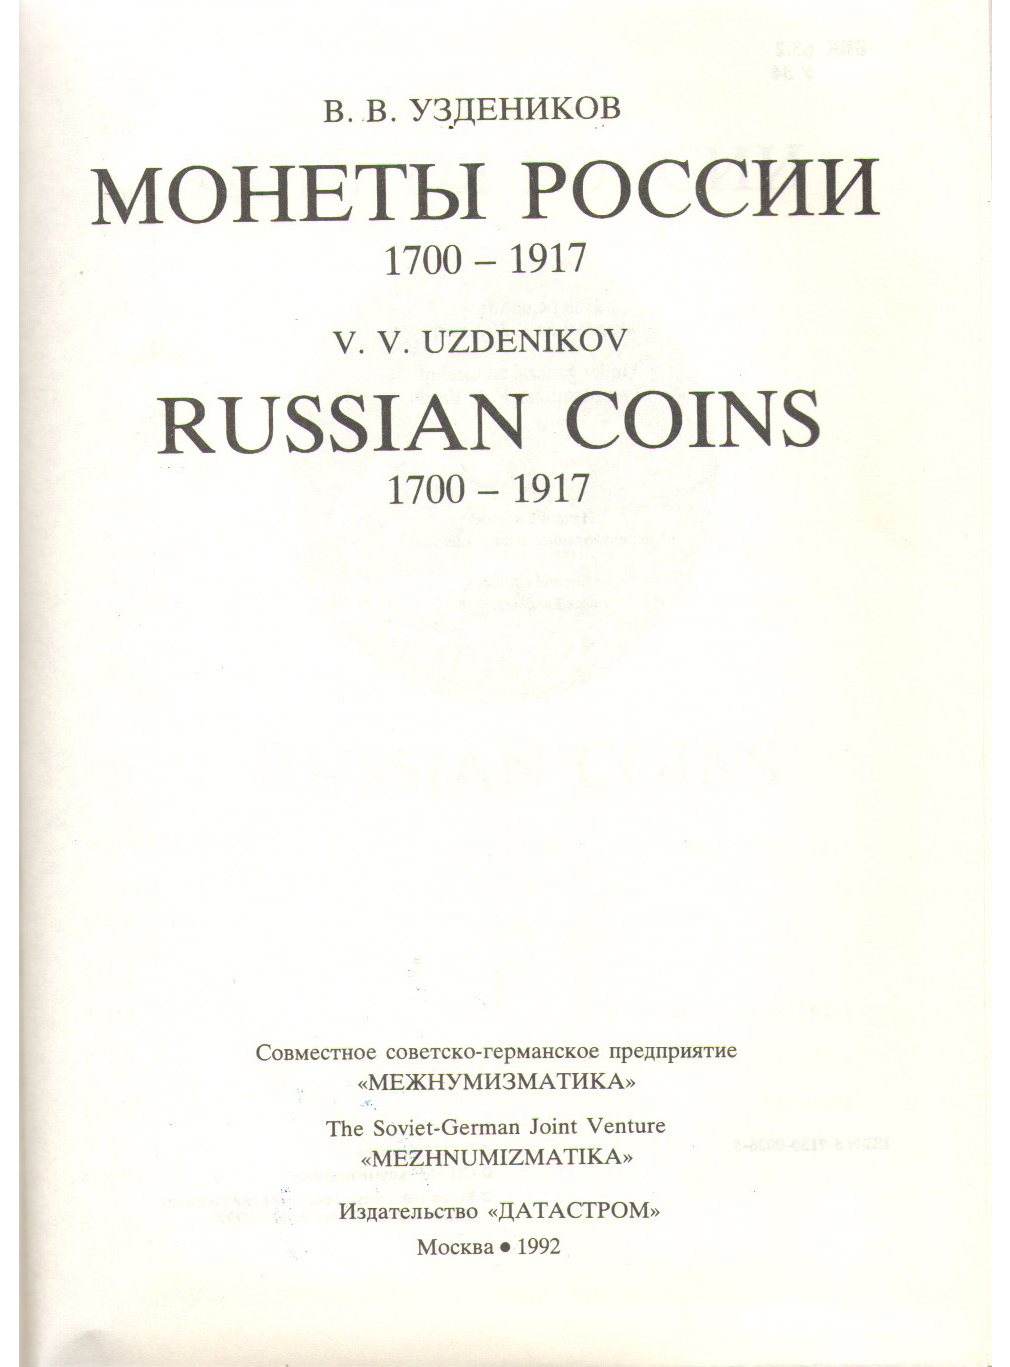 В.В.Уздеников. Монеты России 1700-1917гг. 753-18